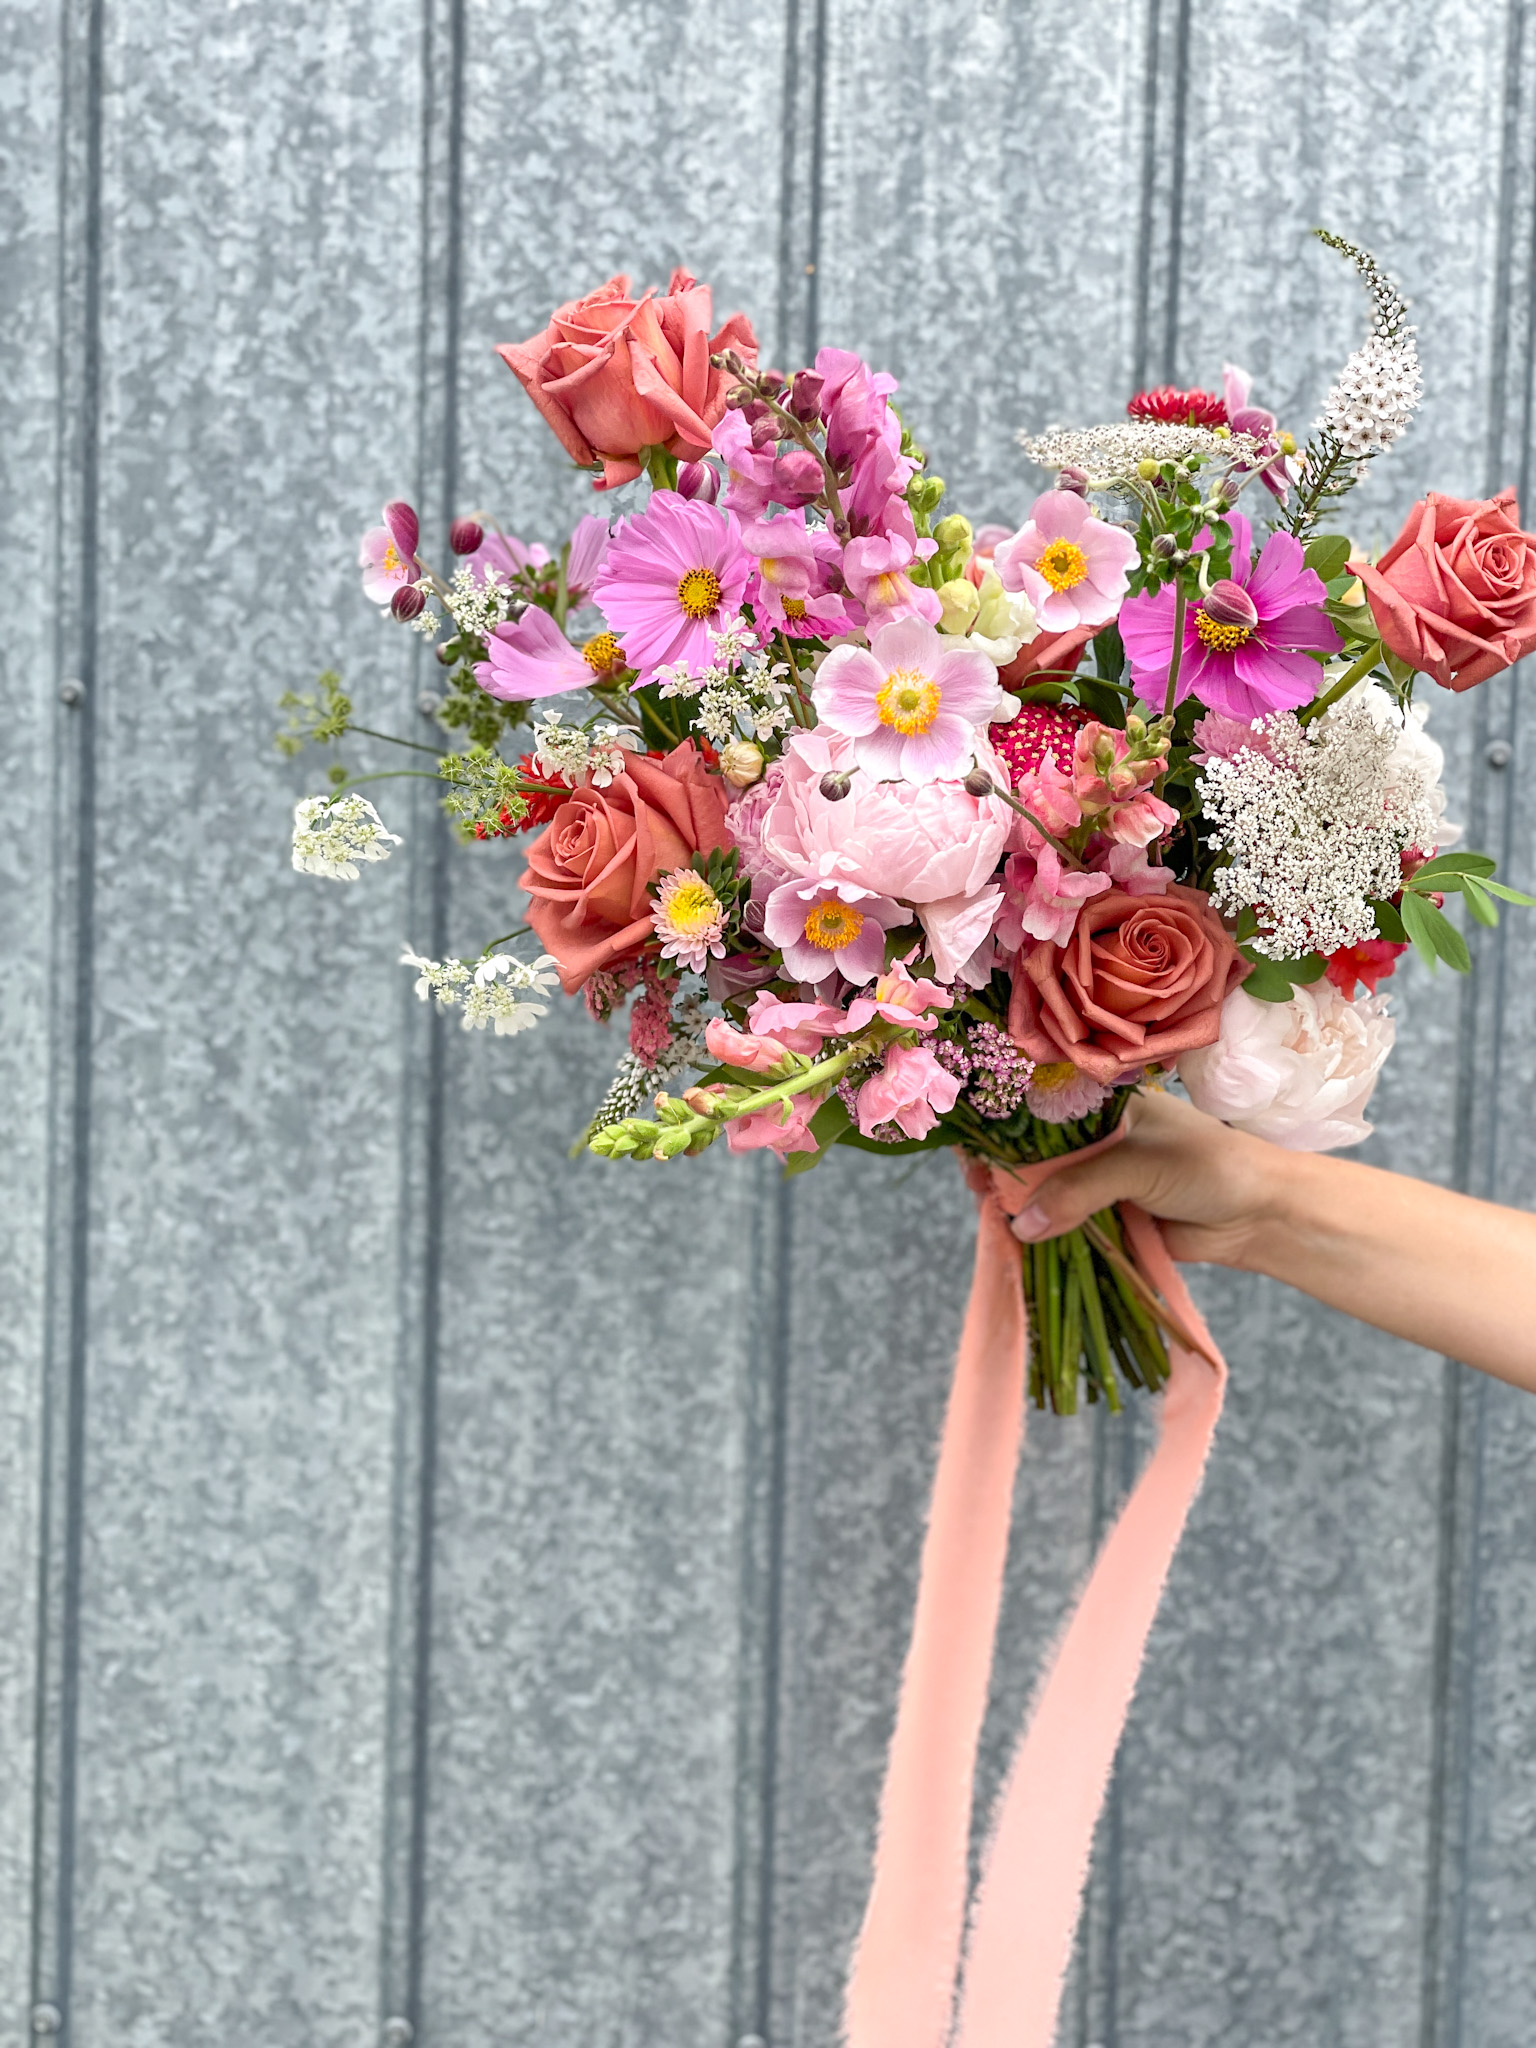 Pivoinerie Lili - Ferme Florale - Bouquets de fleurs séchées